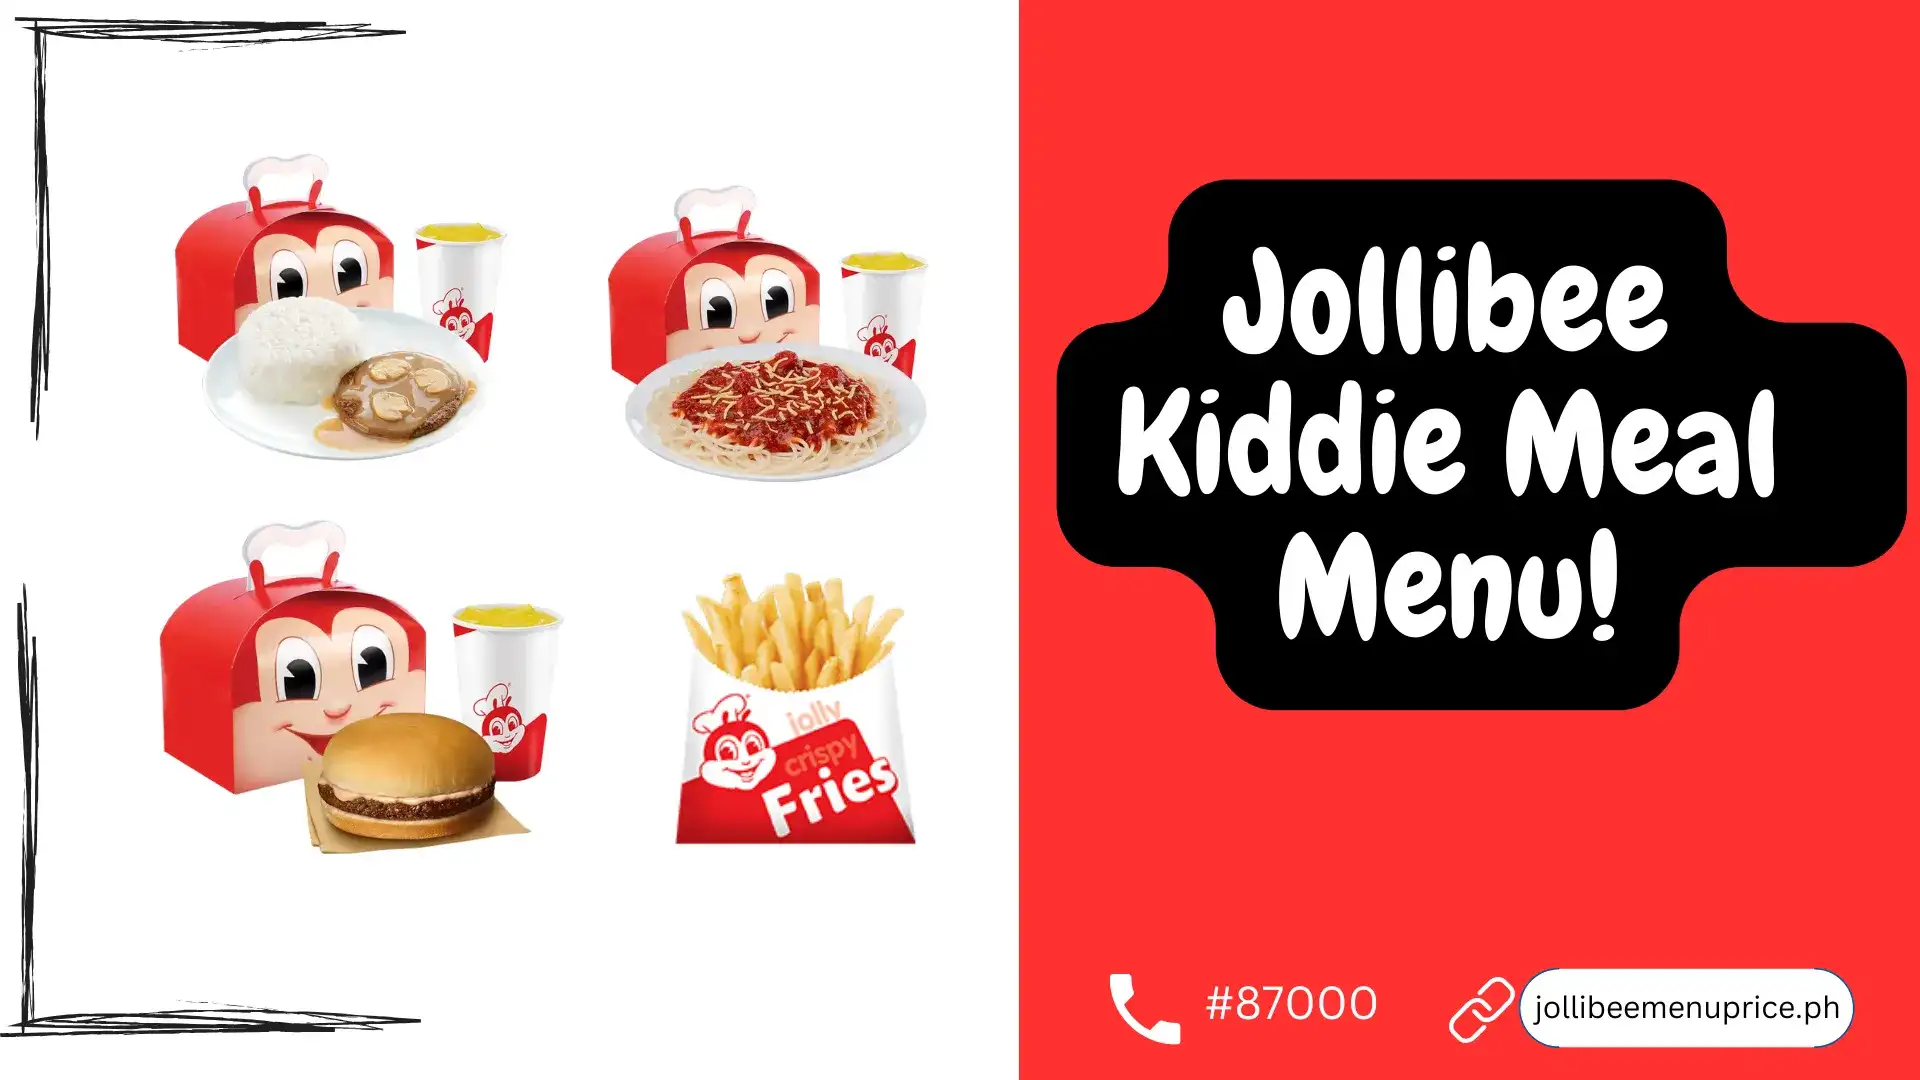 Jollibee kiddie meal menu